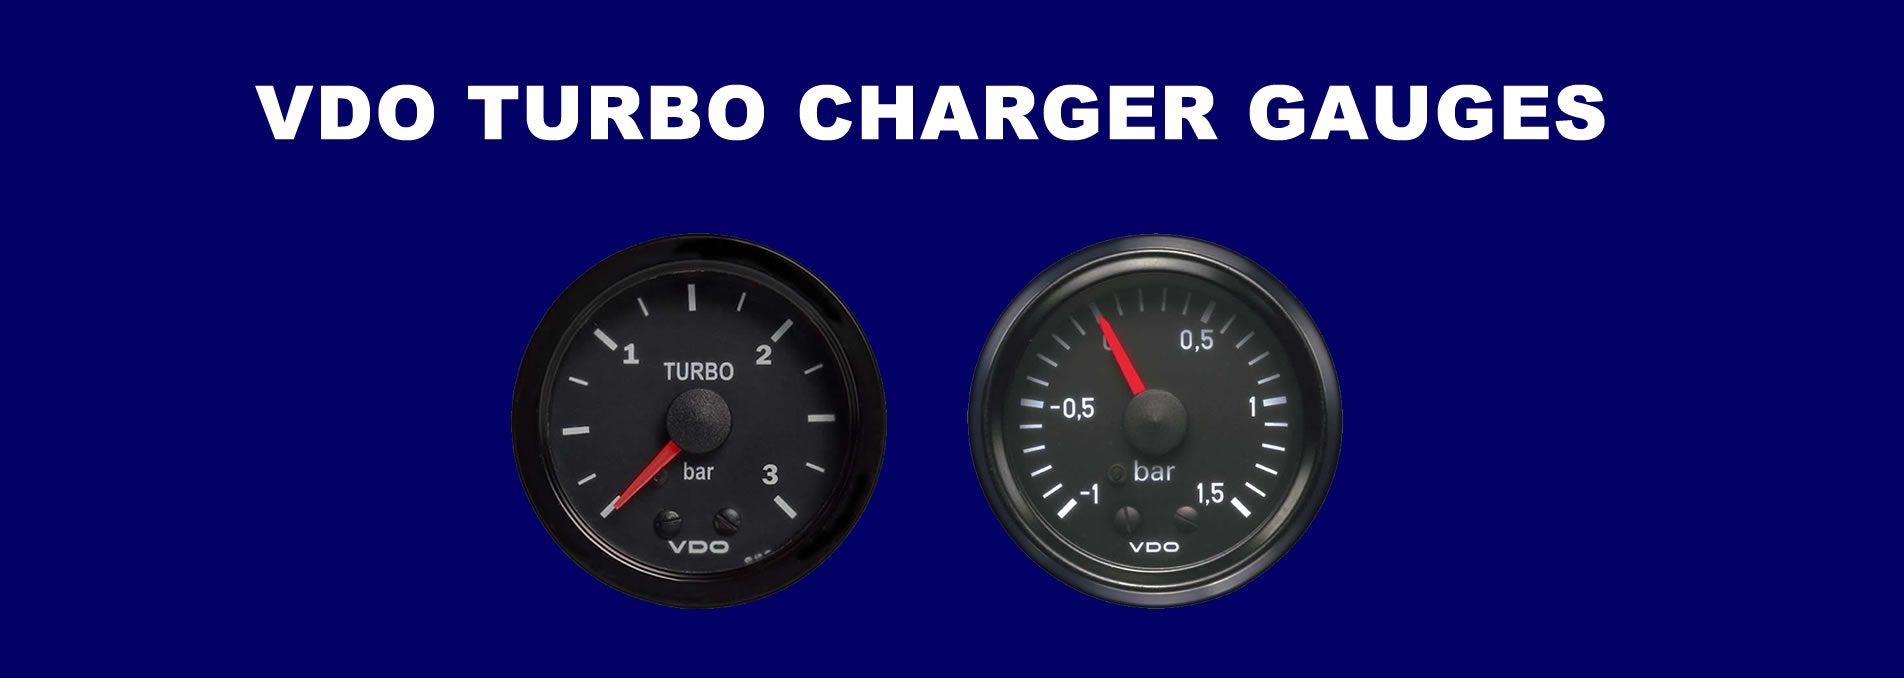 VDO Turbo Charger gauges banner